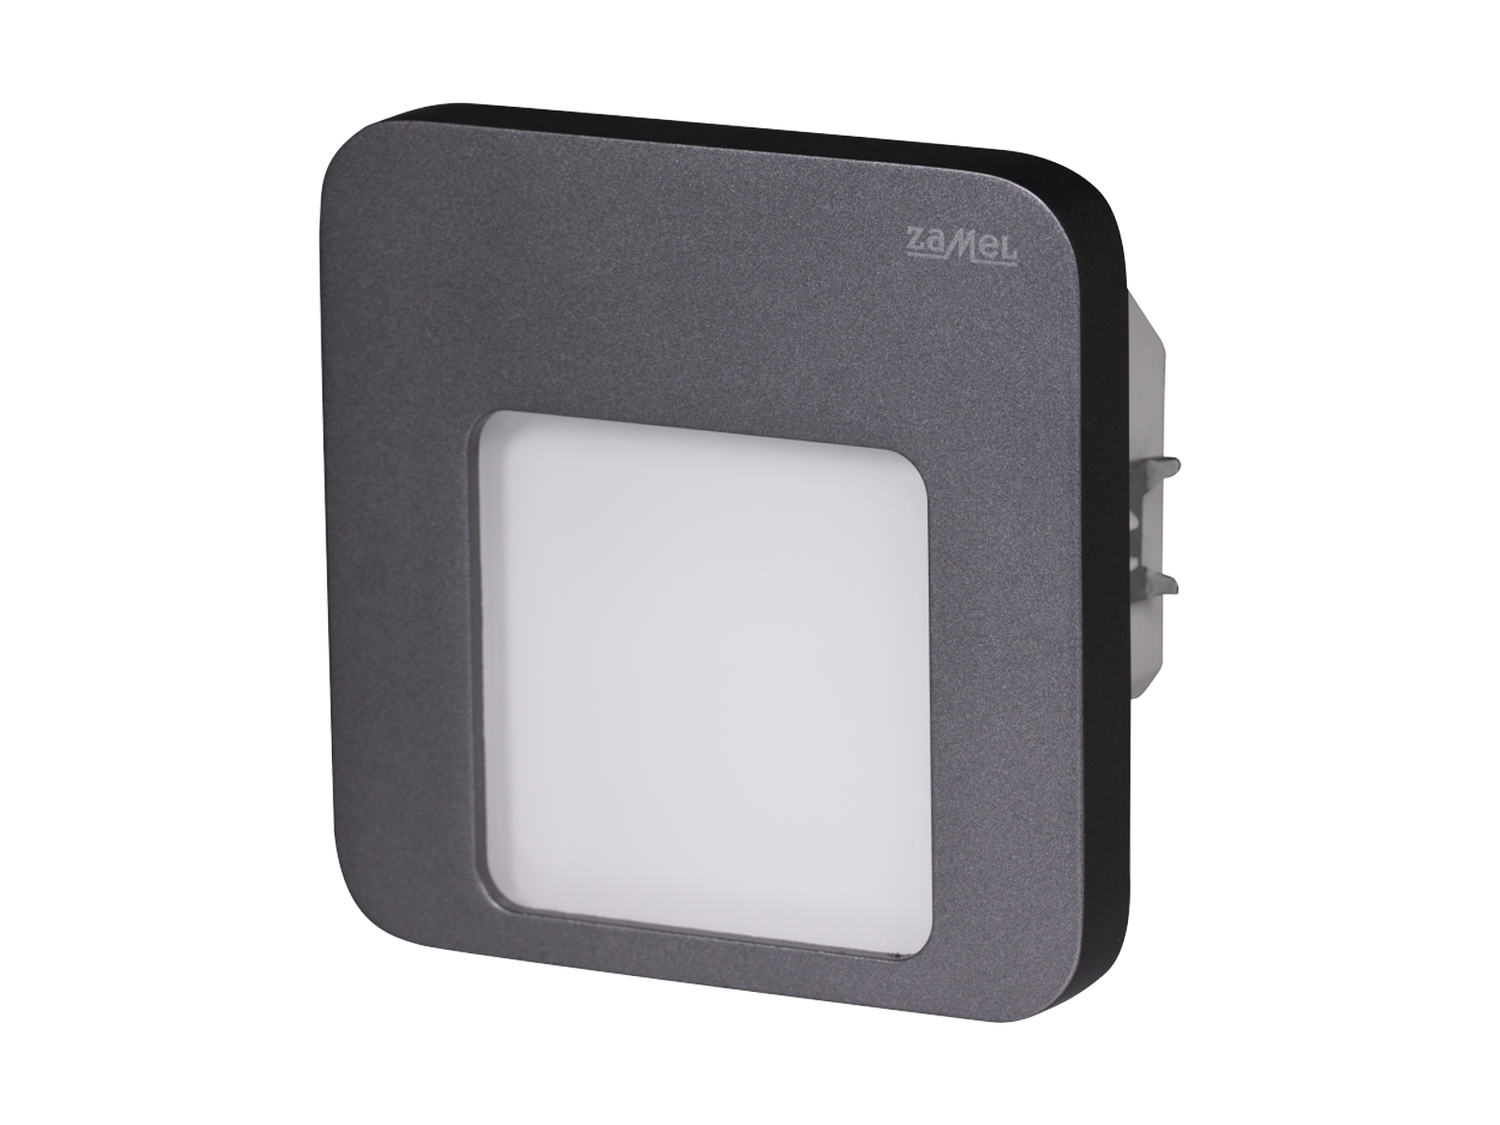 Svítidlo LED do KU krabice pod omítku LEDIX MOZA 230V AC, grafit, neutrální bílá, IP20